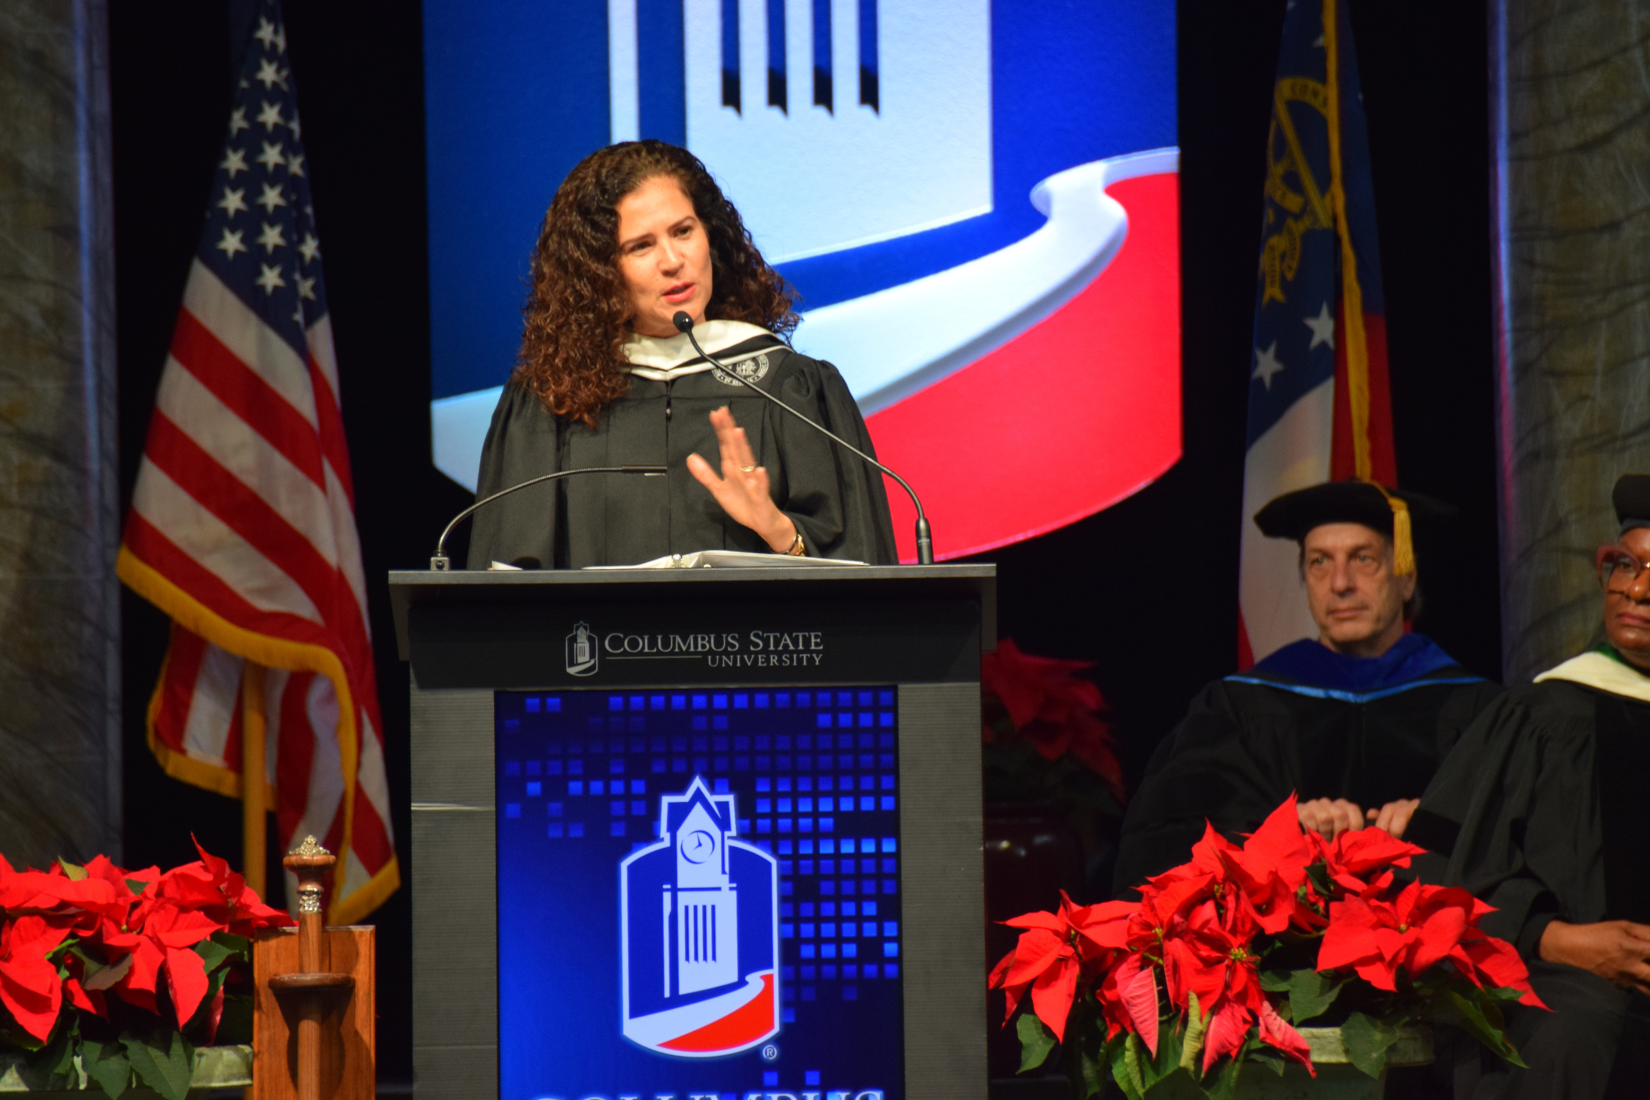 Phot of Barbara Rivera Holmes speaking at a podium at graduation